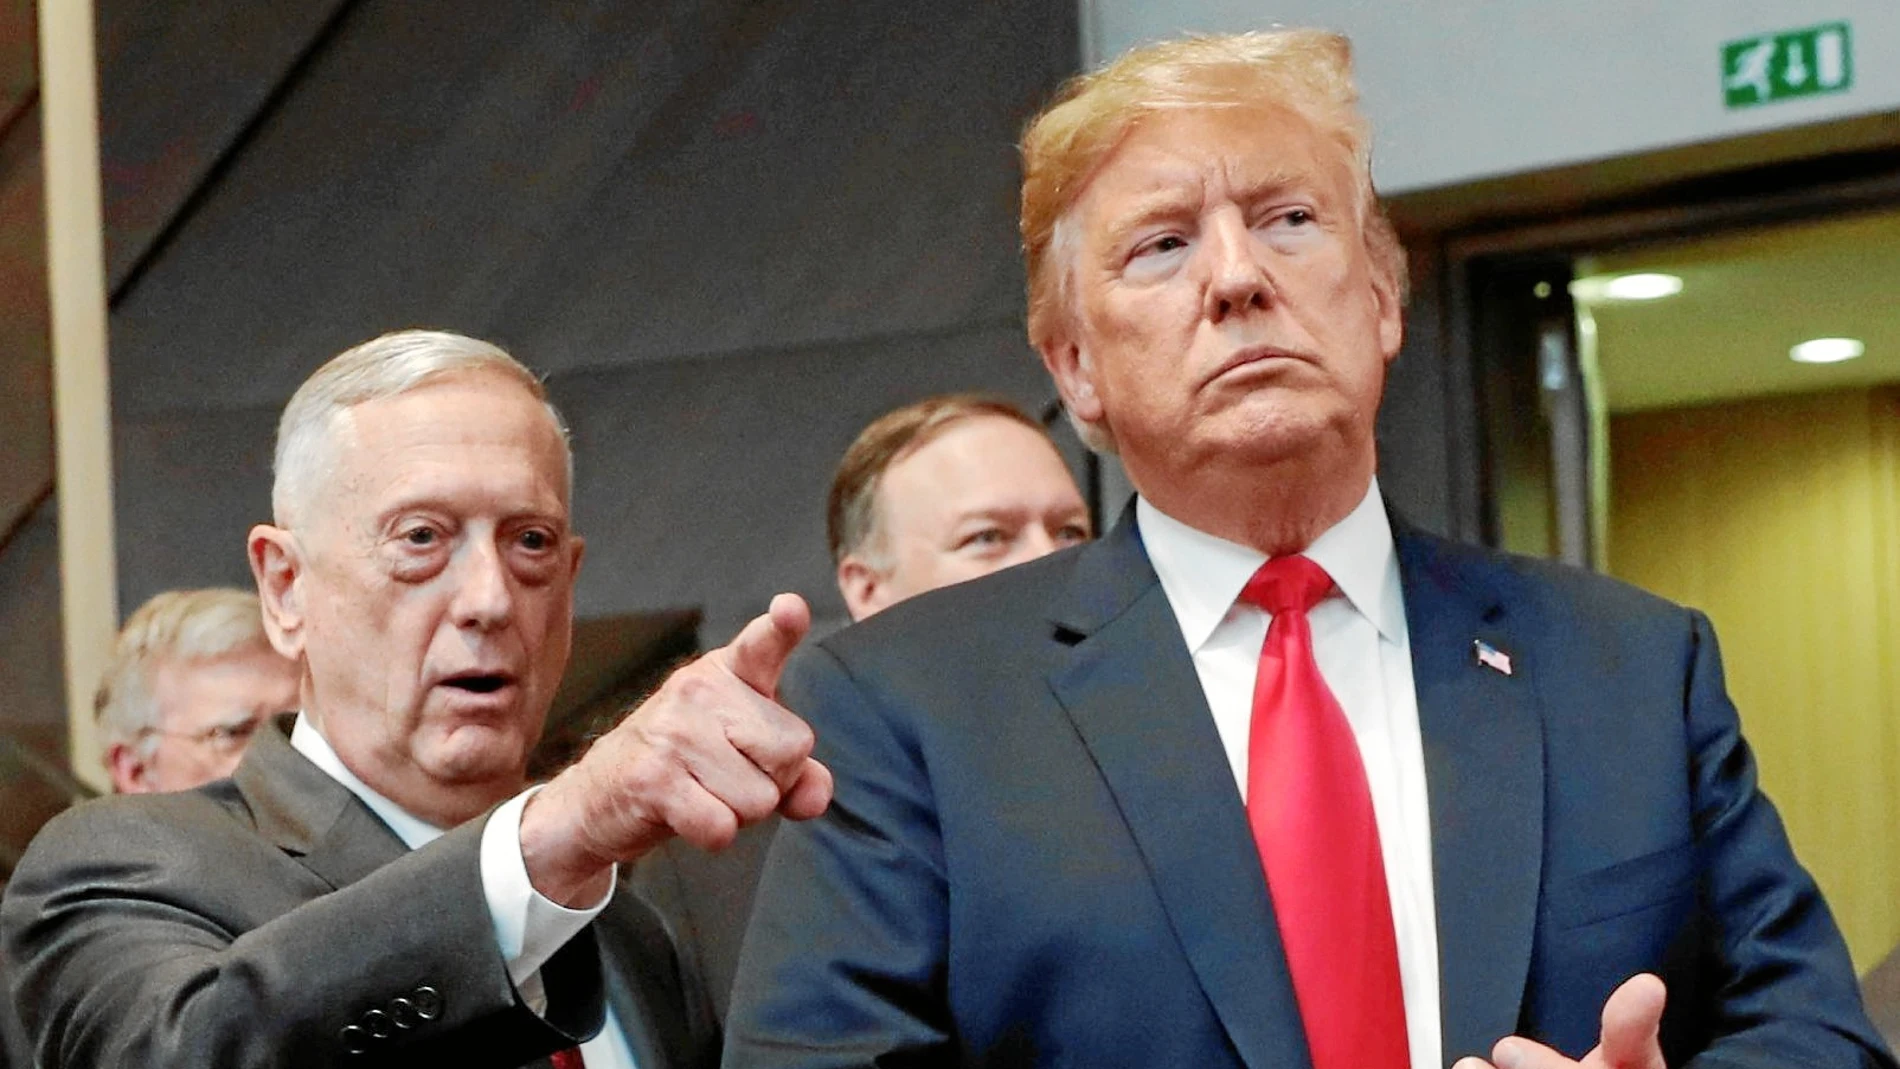 El todavía secretario de Defensa Mattis junto al presidente Trump durante la cumbre de la OTAN que tuvo lugar en Bruselas el pasado 11 de julio